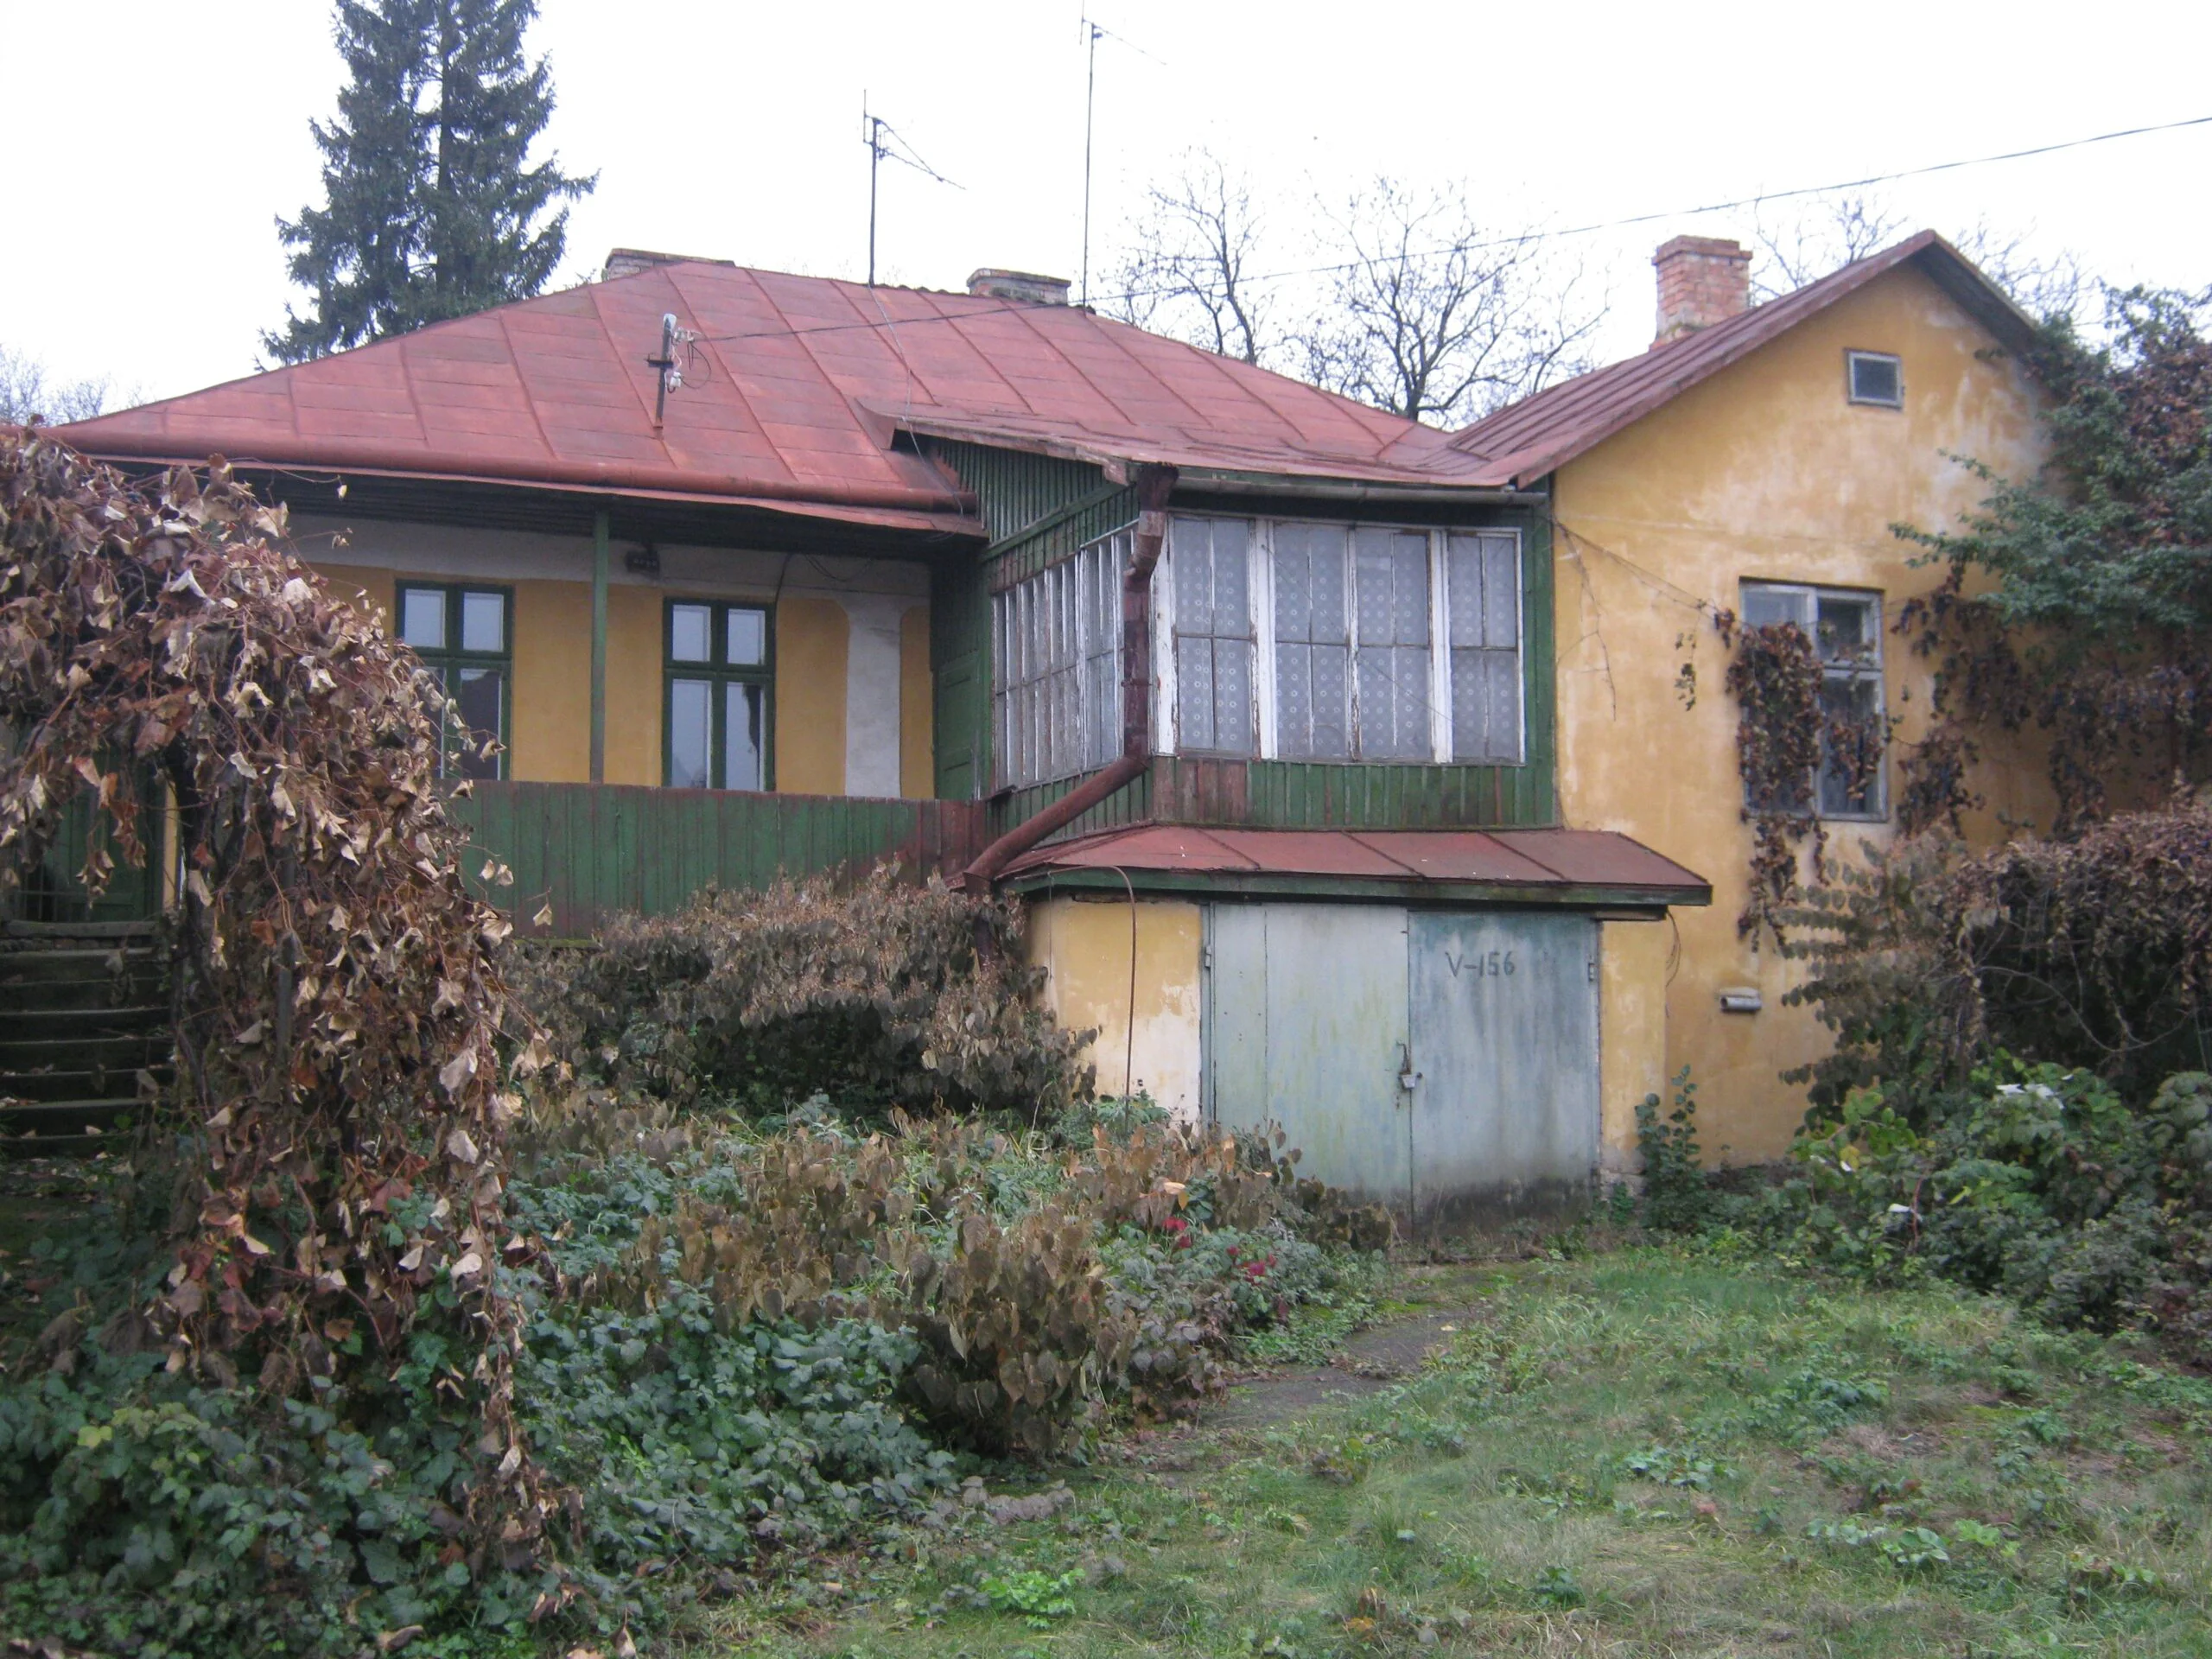 După 30 de ani de incultură, corupție și inacțiune din partea autorităților, va mai putea fi salvată casa lui Aron Pumnul din Cernăuți?